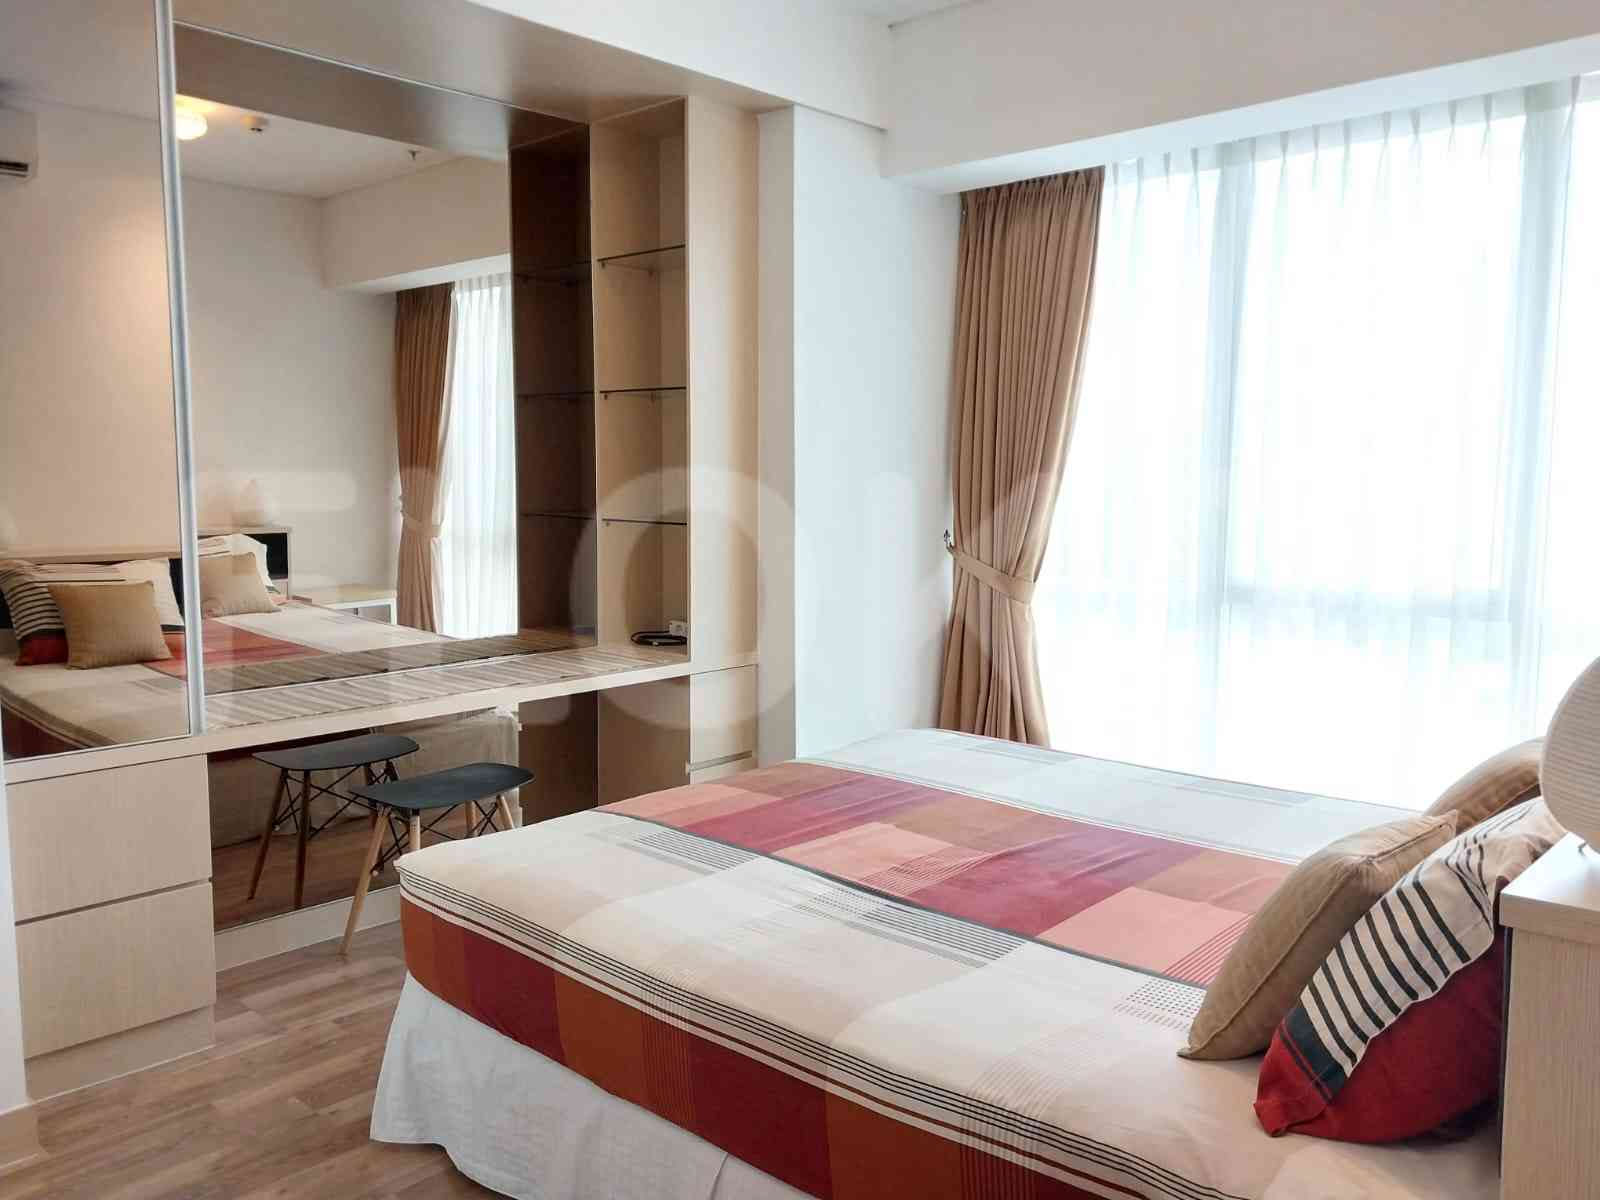 2 Bedroom on 15th Floor for Rent in Sky Garden - fse9d6 2